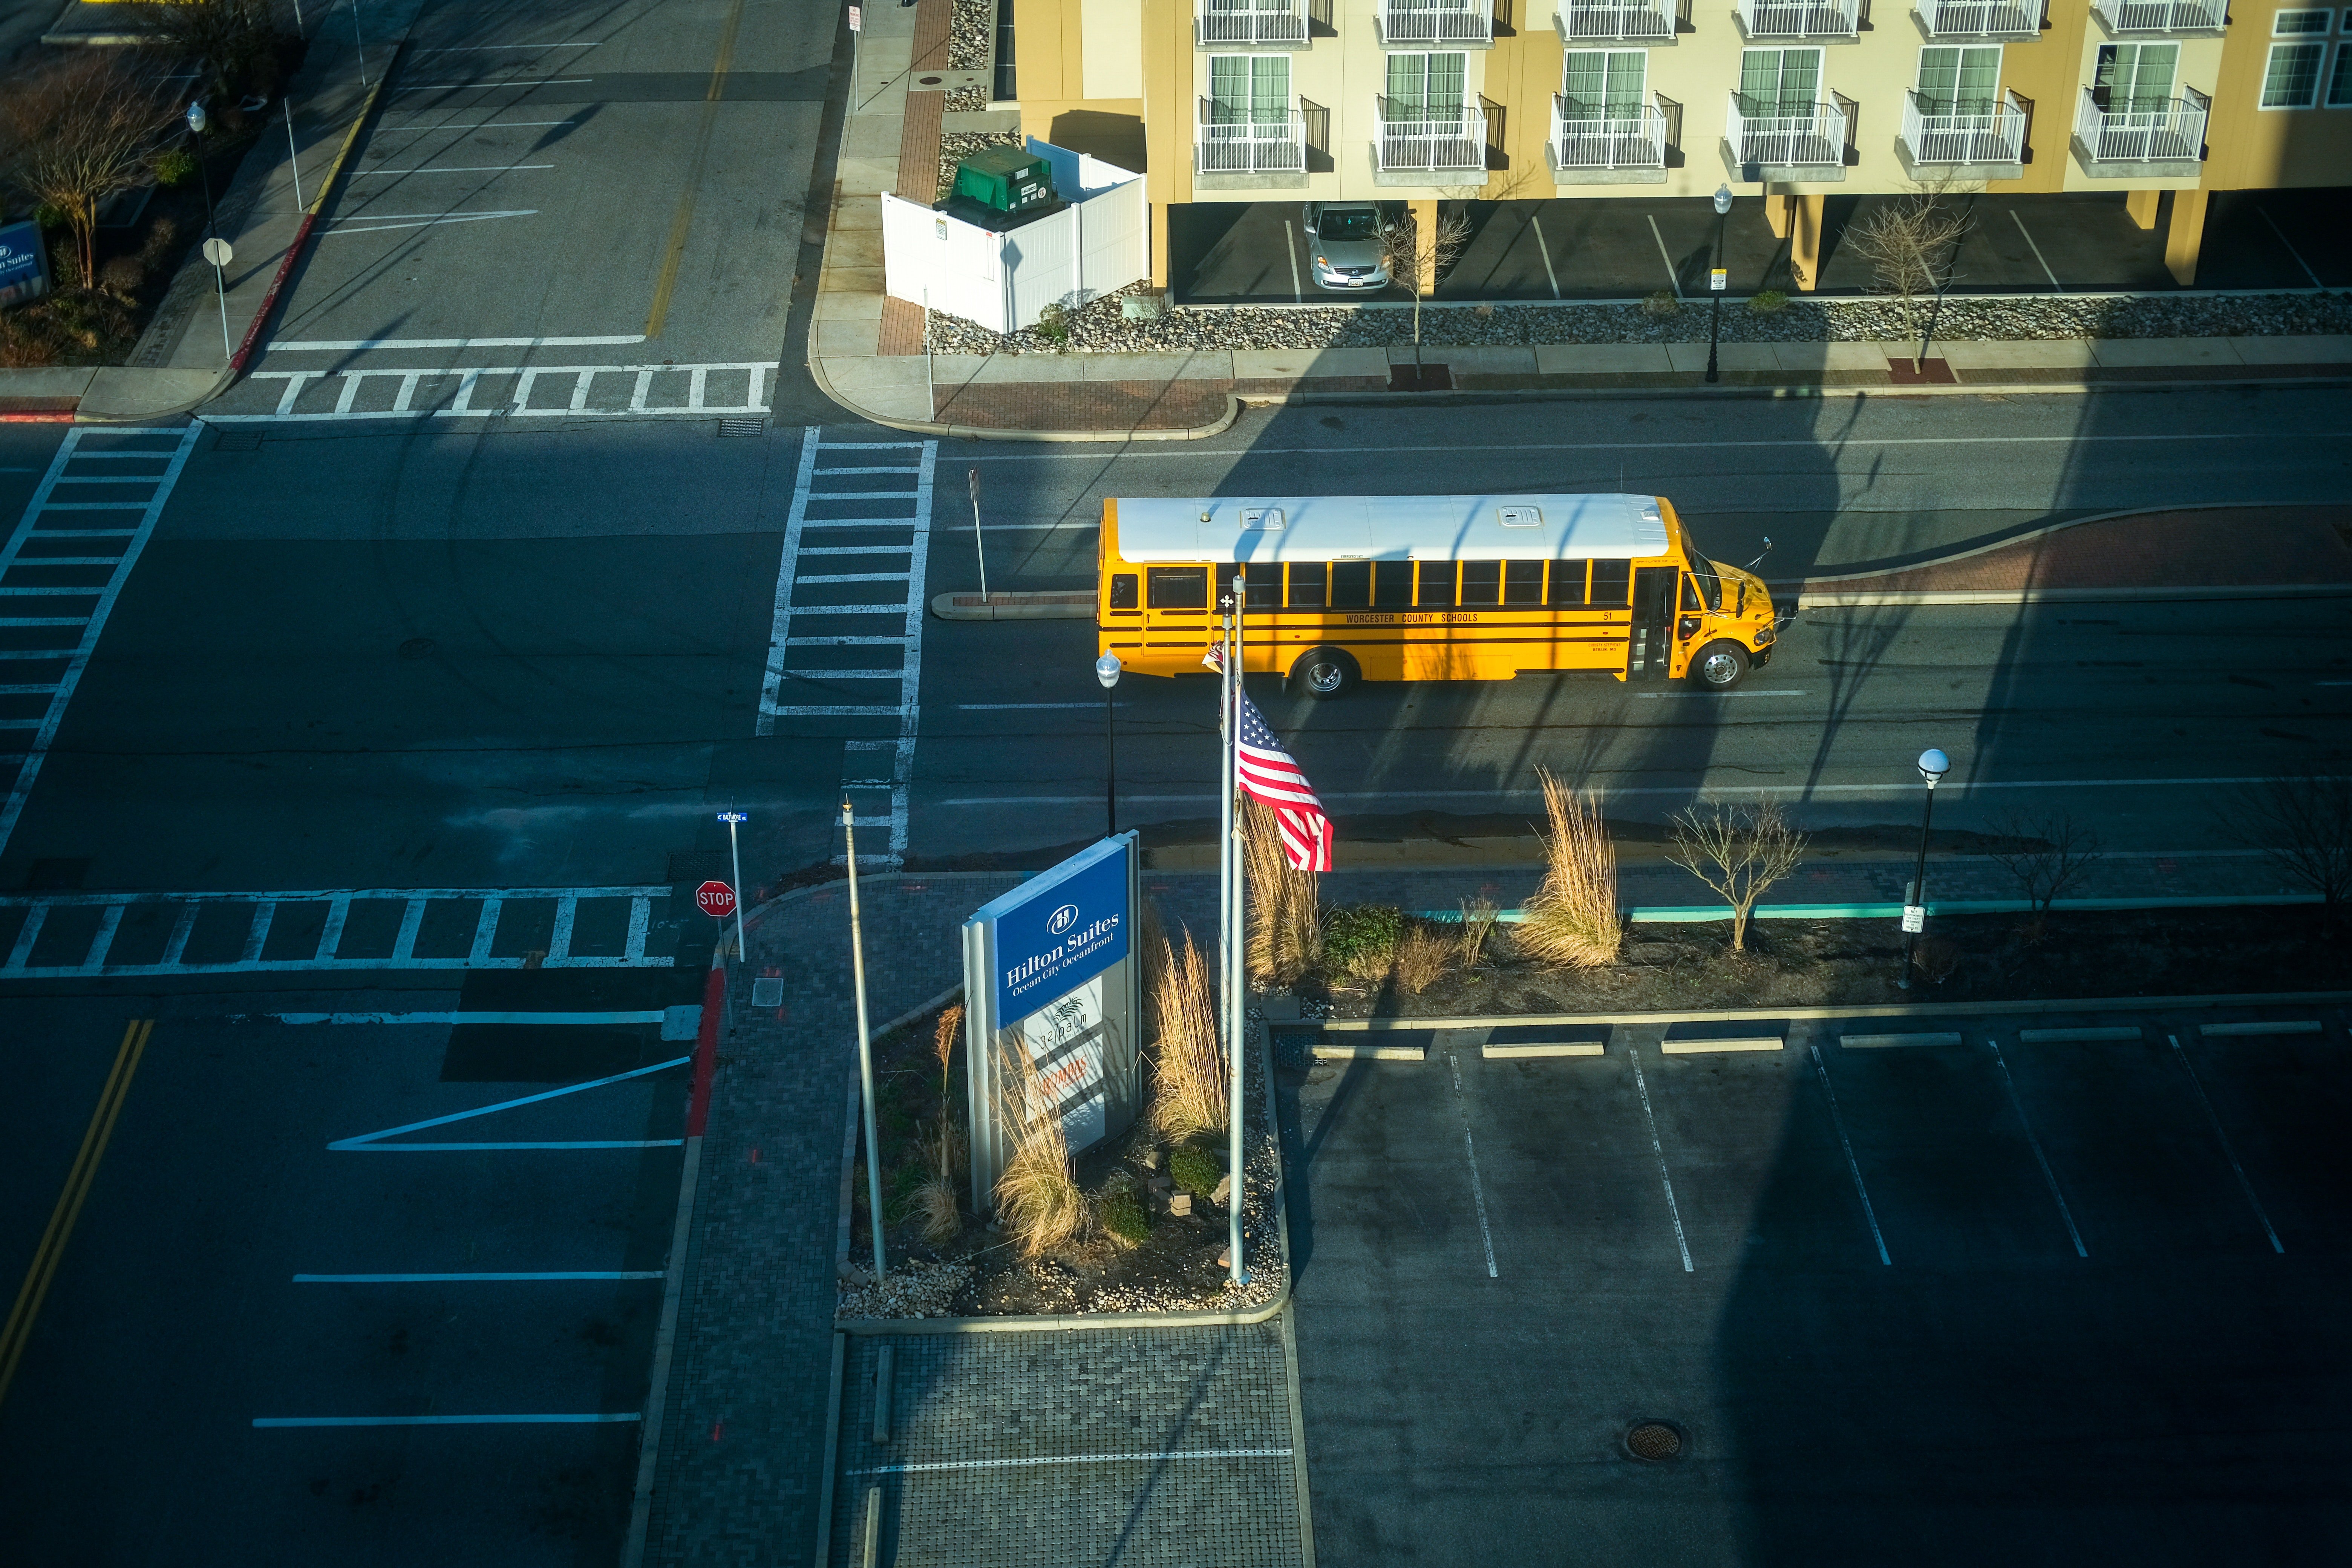 Un bus scolaire sur la route | Source : Pexels